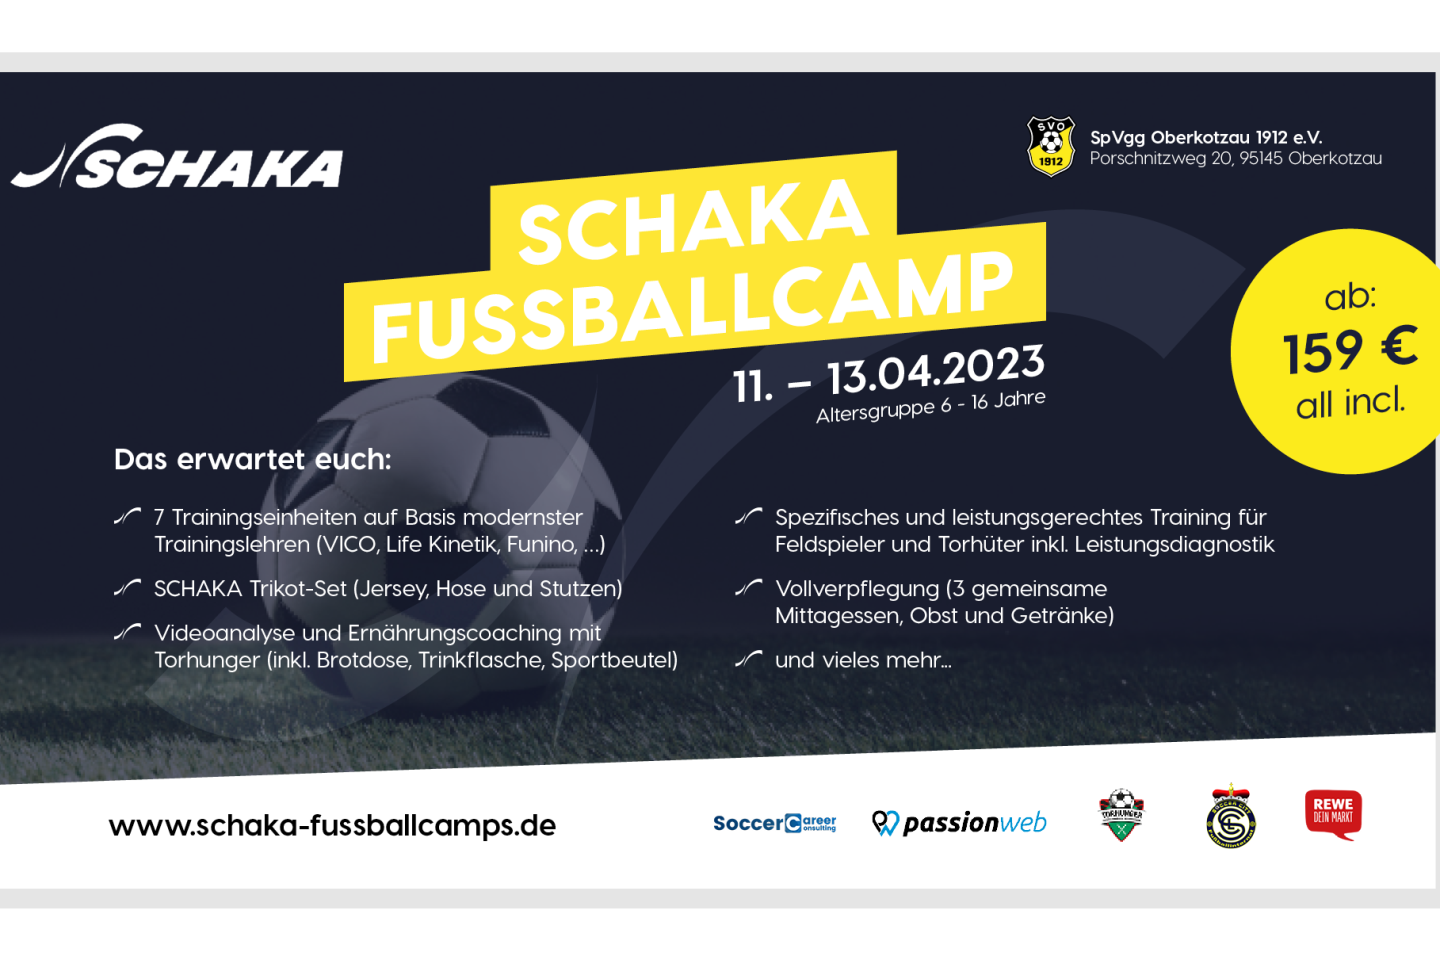 SCHAKA Fußballcamp in Oberkotzau vom 11.04. - 13.04.2023